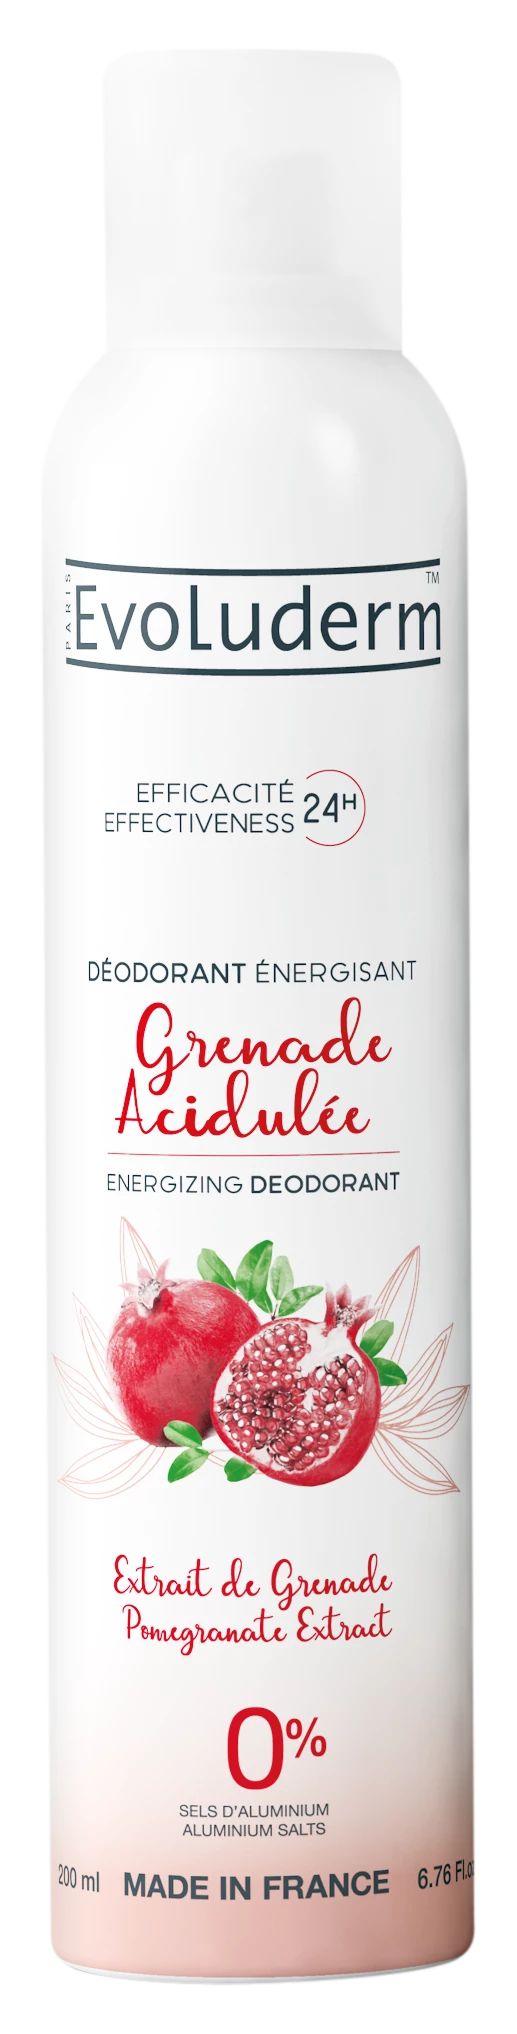 Desodorante Acidulado Genade Extracto de Genade, 200ml - EVOLUDERM